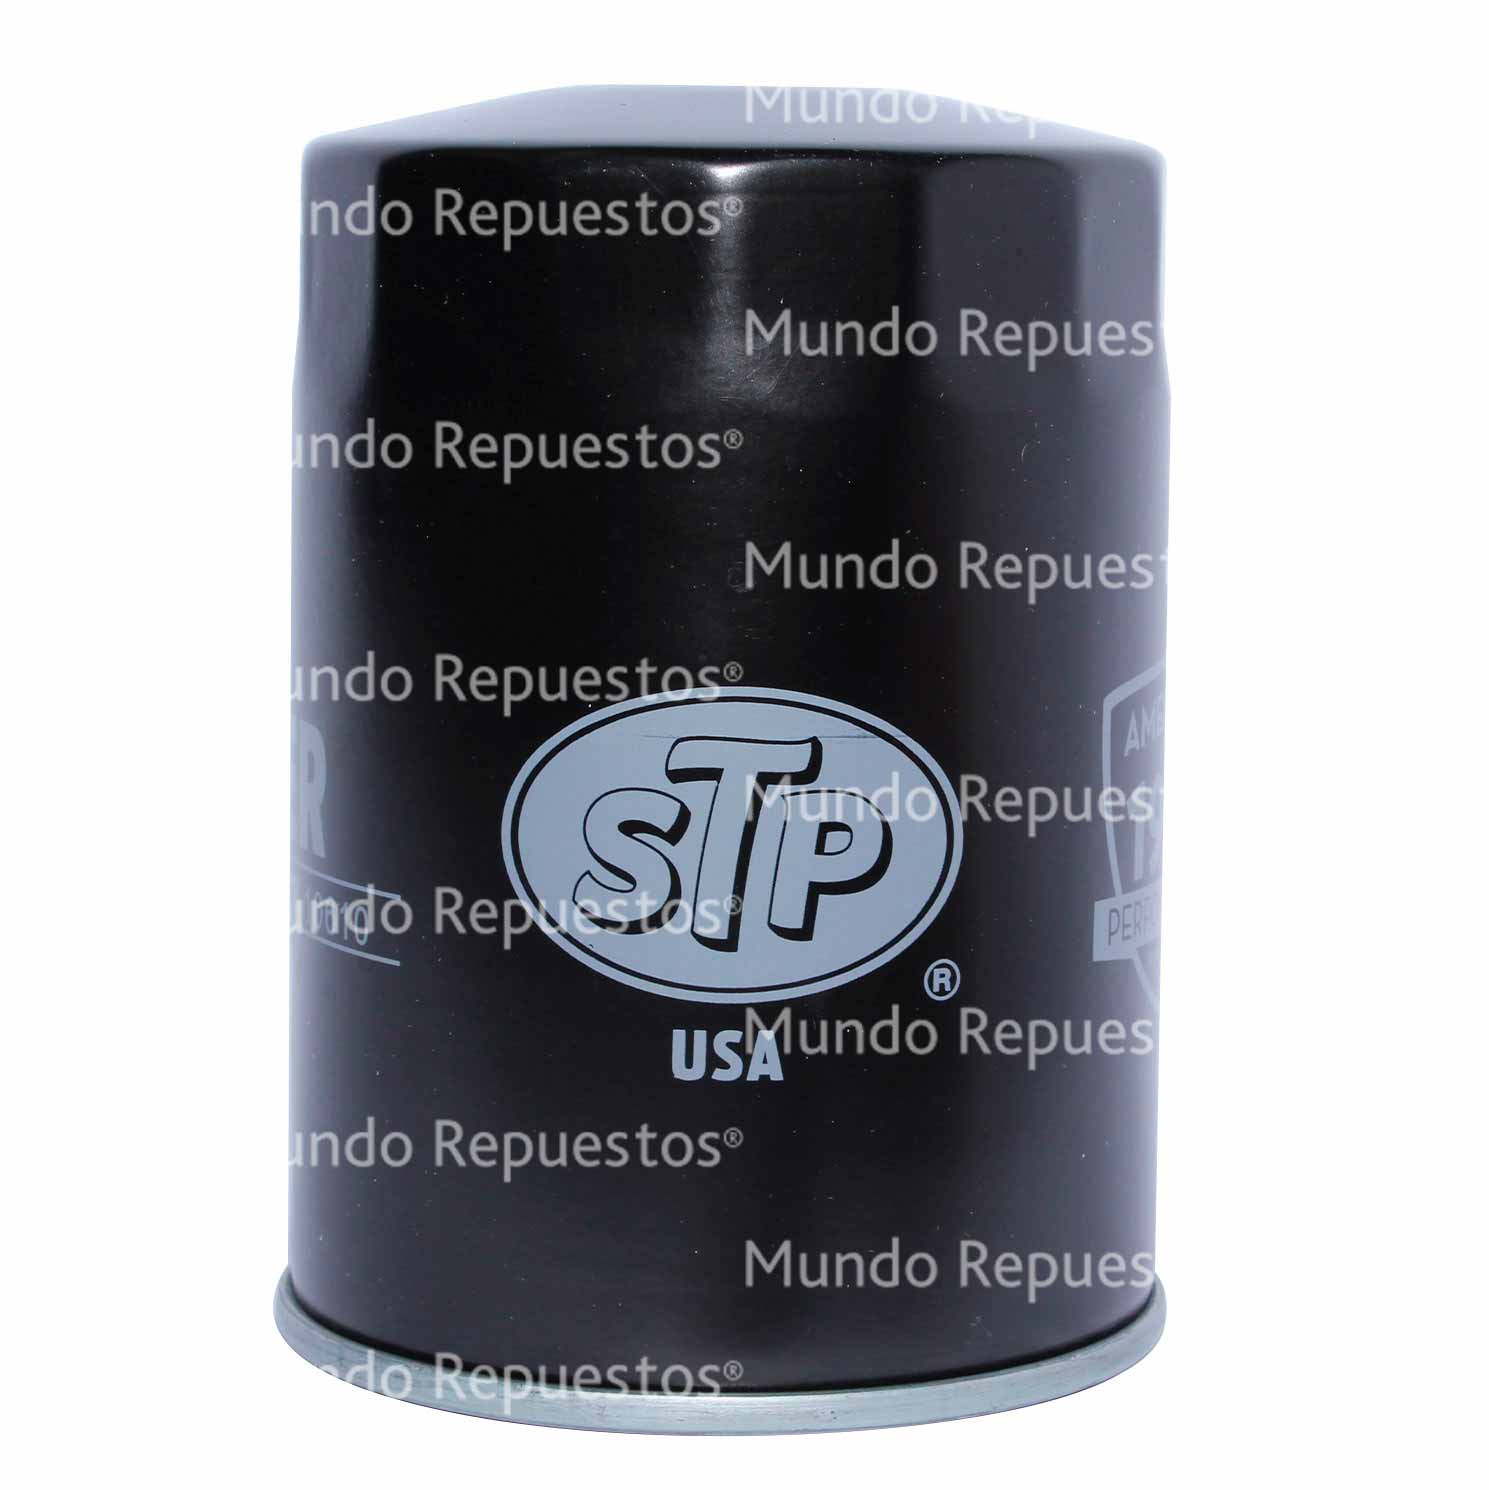 Filtro aceite marca Stp disponible en Mundo Repuestos